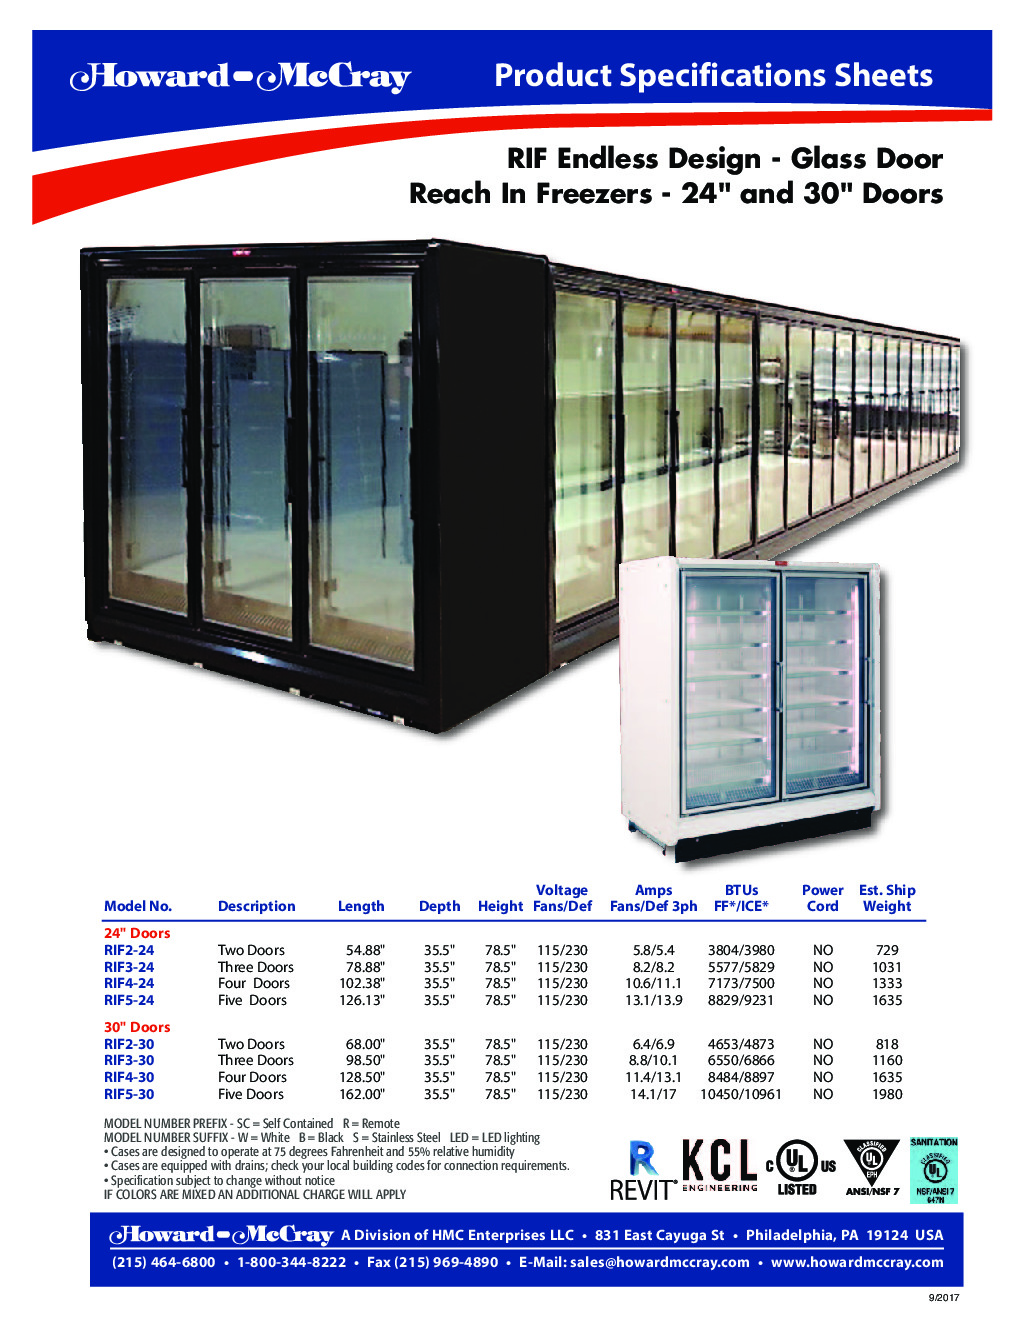 Howard-McCray RIF5-24-LED Merchandiser Freezer